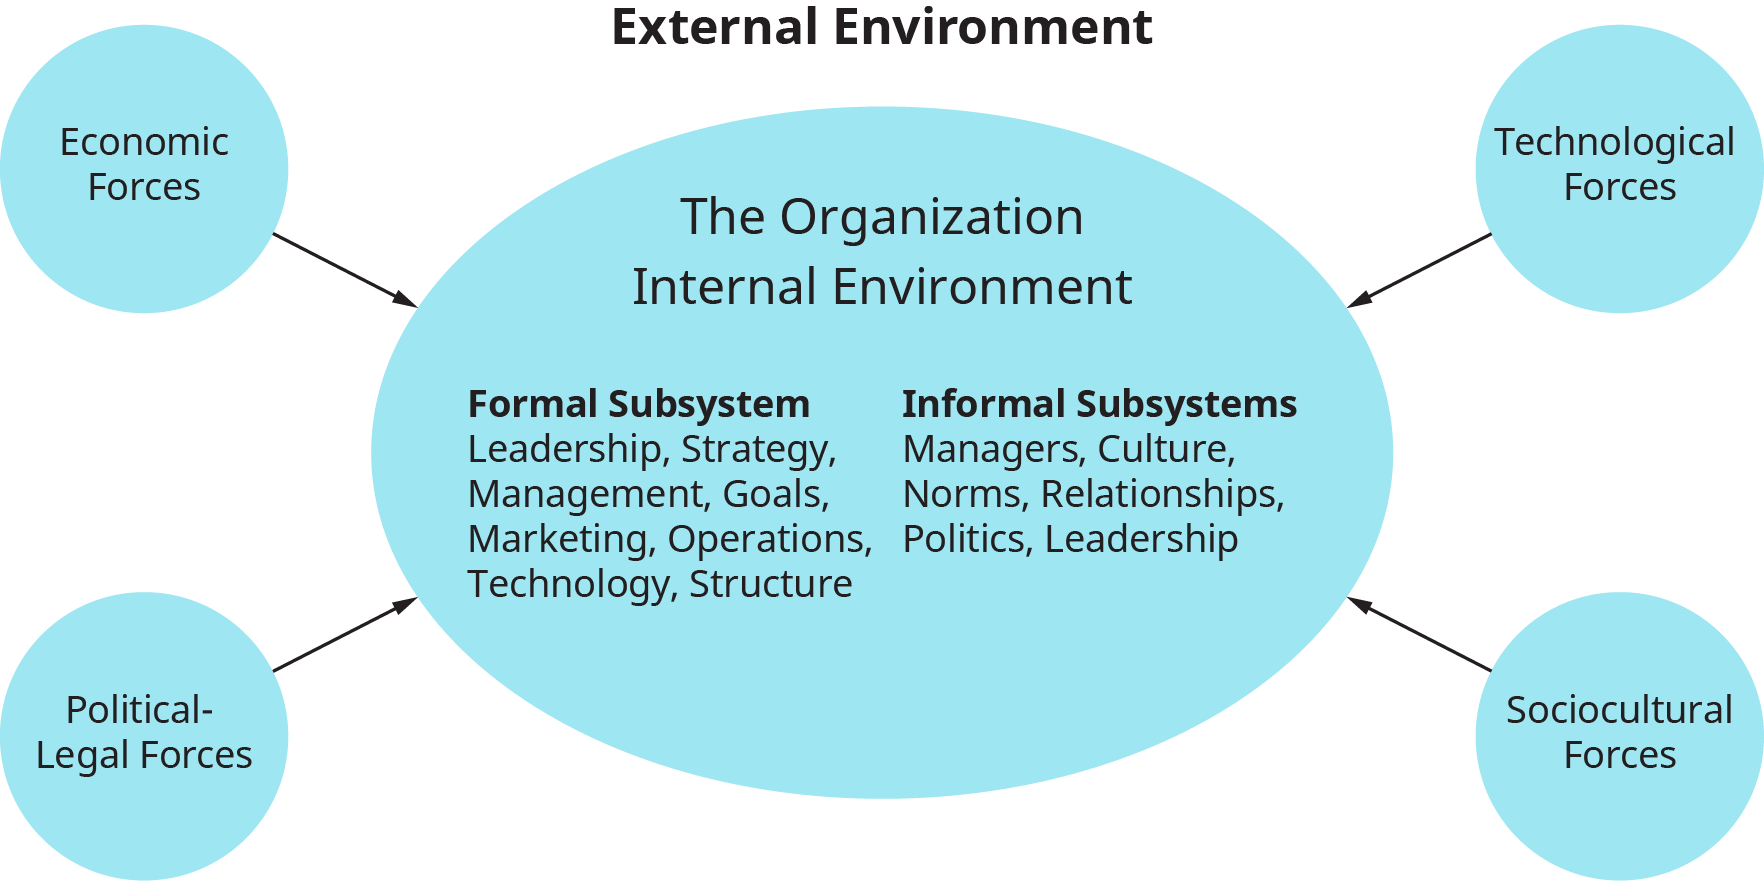 يوضح الرسم التخطيطي الأنظمة الفرعية للبيئة الداخلية للمؤسسة والقوى الخارجية التي تؤثر عليها.